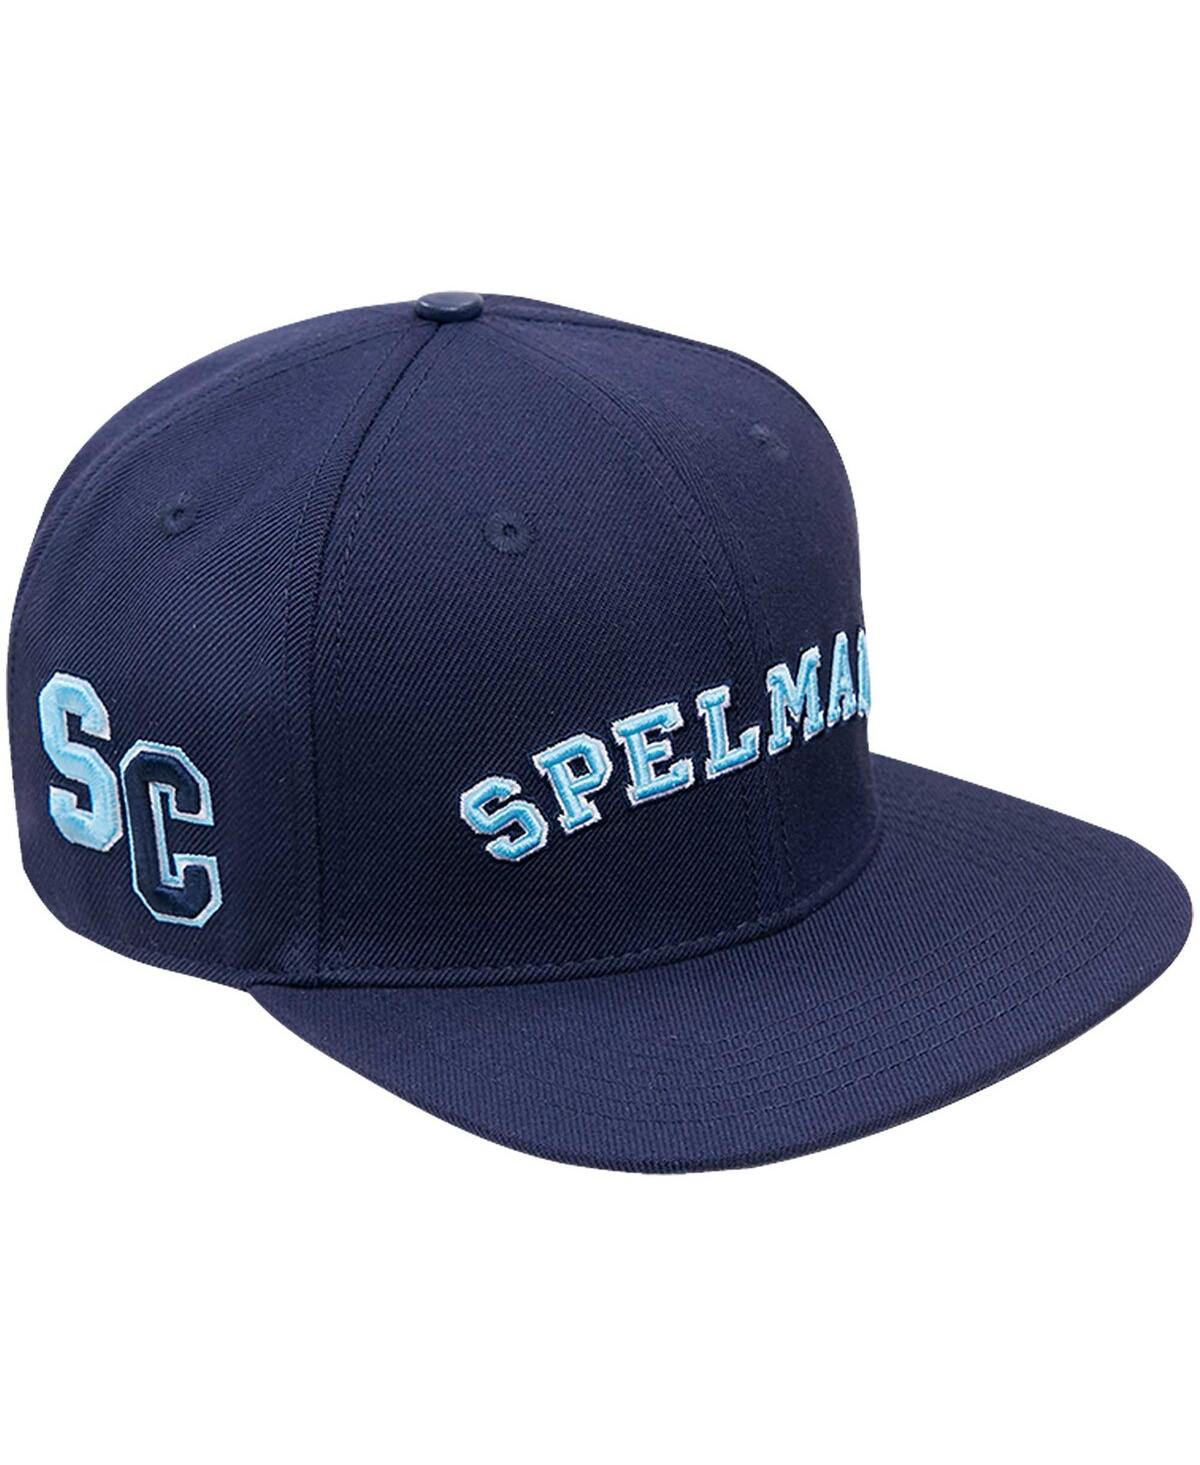 Shop Pro Standard Men's  Navy Spelman College Jaguars Evergreen Spelman Snapback Hat